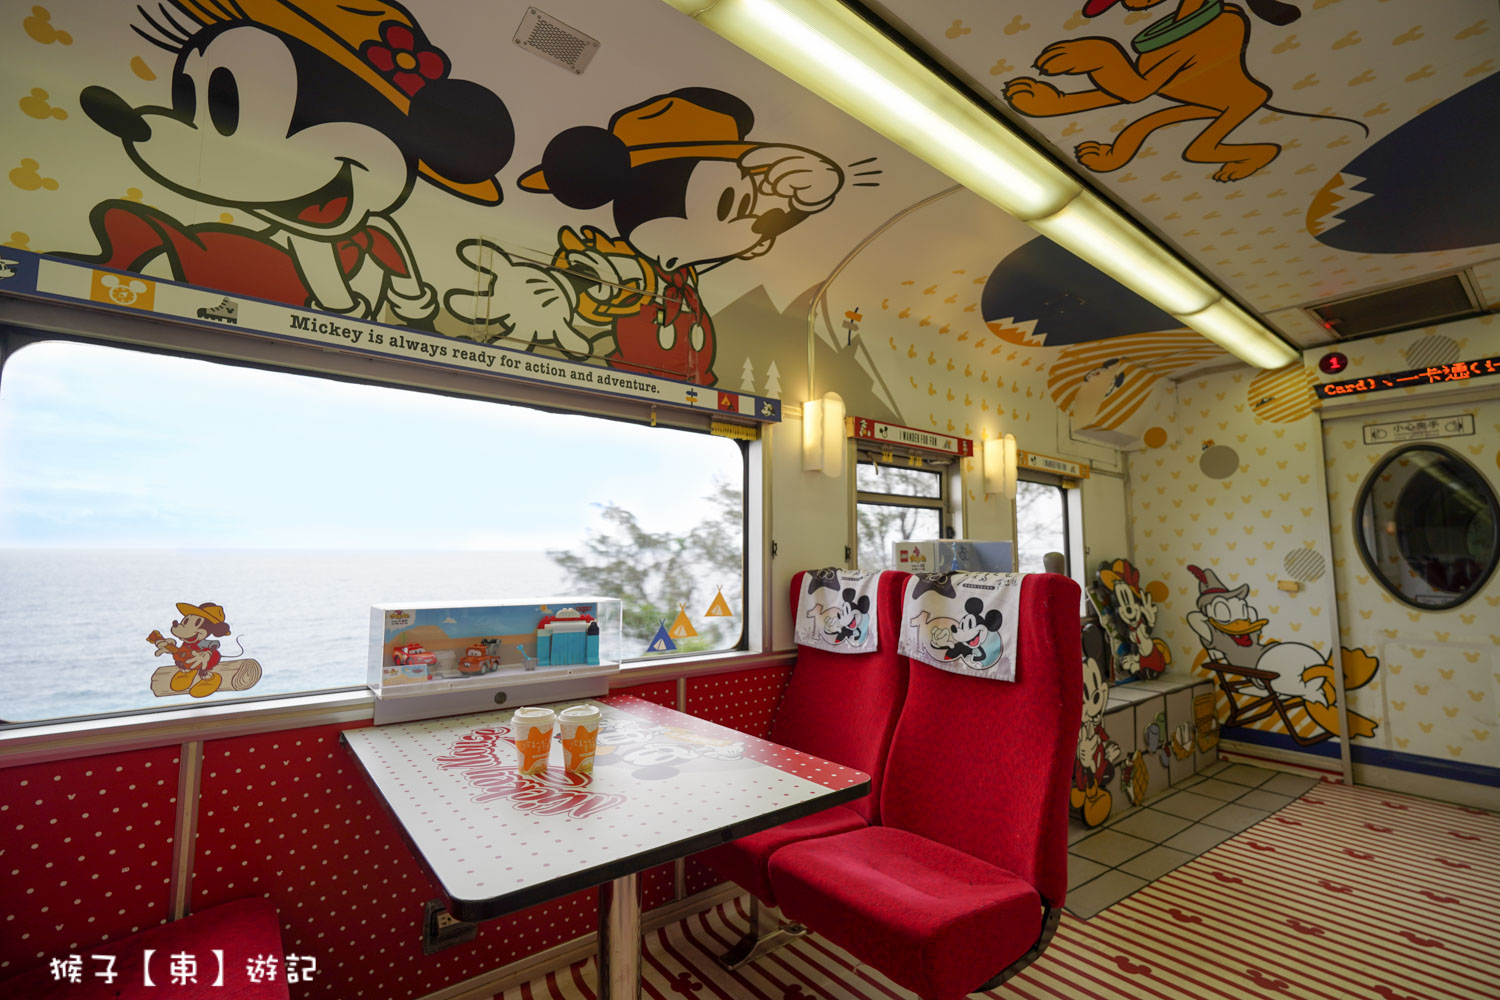 網站近期文章：迪士尼主題觀光列車 環島之星夢想號 在火車上唱KTV 免費DIY 飲料暢飲 點心 便當都包在車票 鐵路漫遊